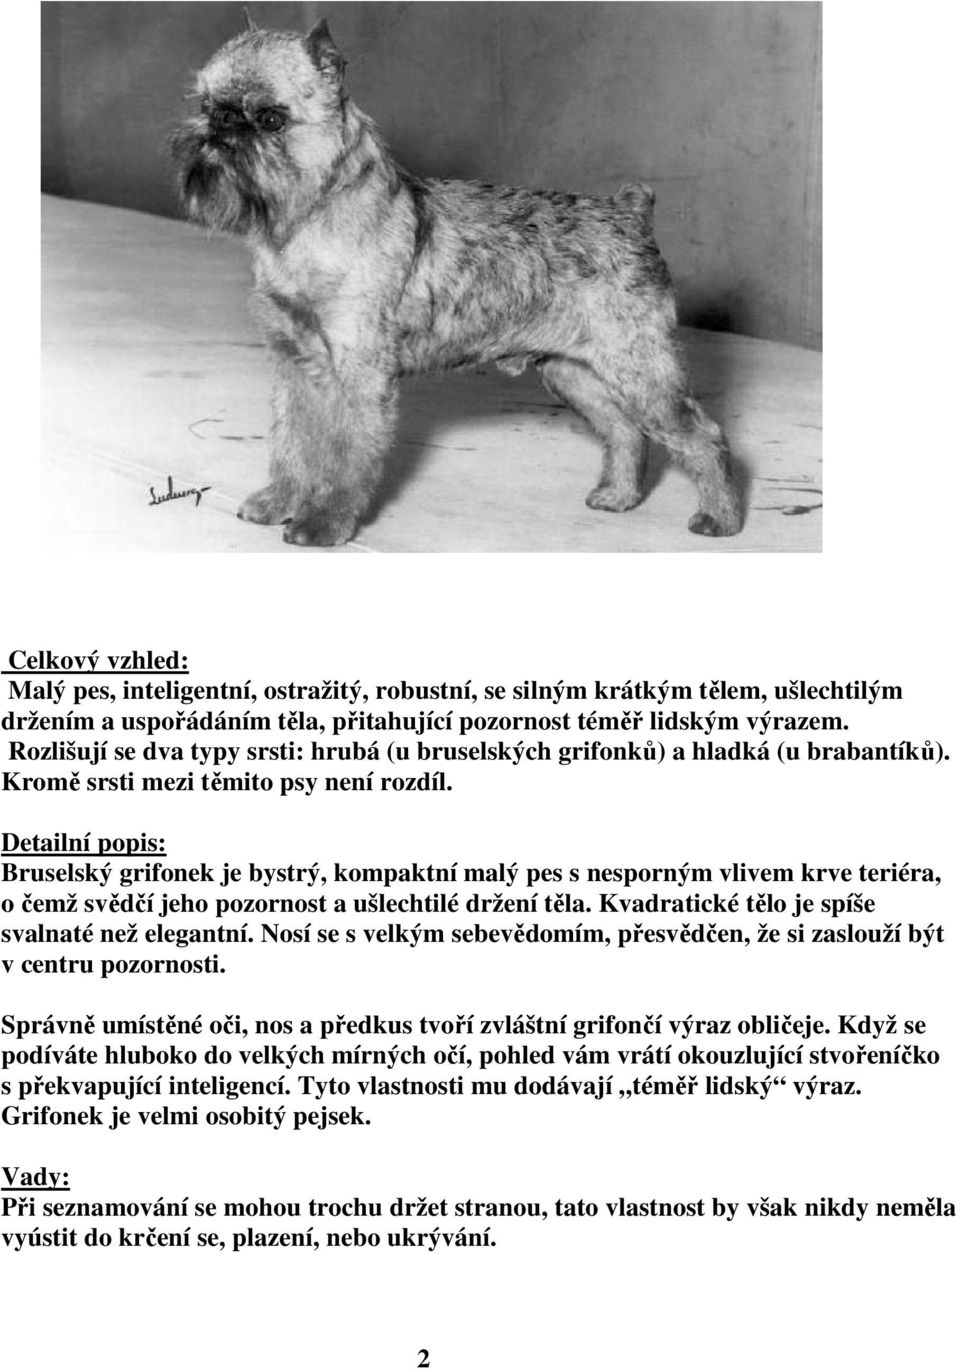 Bruselský grifonek je bystrý, kompaktní malý pes s nesporným vlivem krve teriéra, o čemž svědčí jeho pozornost a ušlechtilé držení těla. Kvadratické tělo je spíše svalnaté než elegantní.